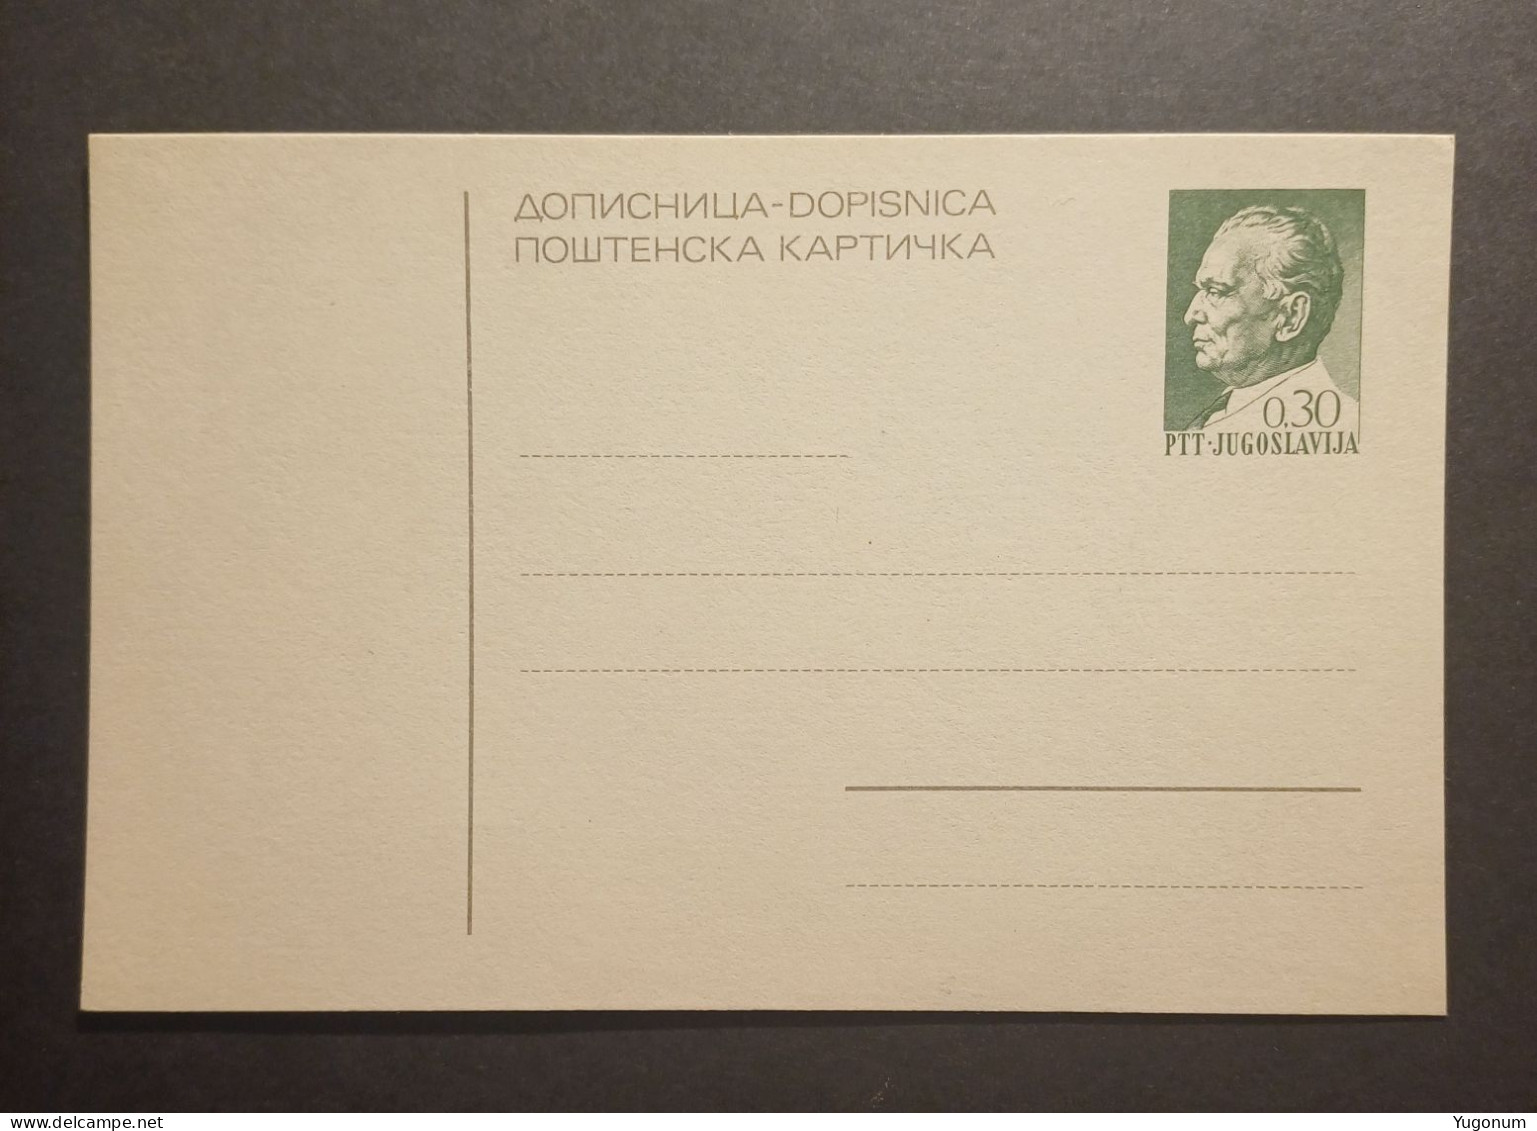 Yugoslavia Slovenia 1970's Unused Stationary Card "dopisnica" With Preprinted 0,30 Dinara Tito Stamp (No 3015) - Cartas & Documentos